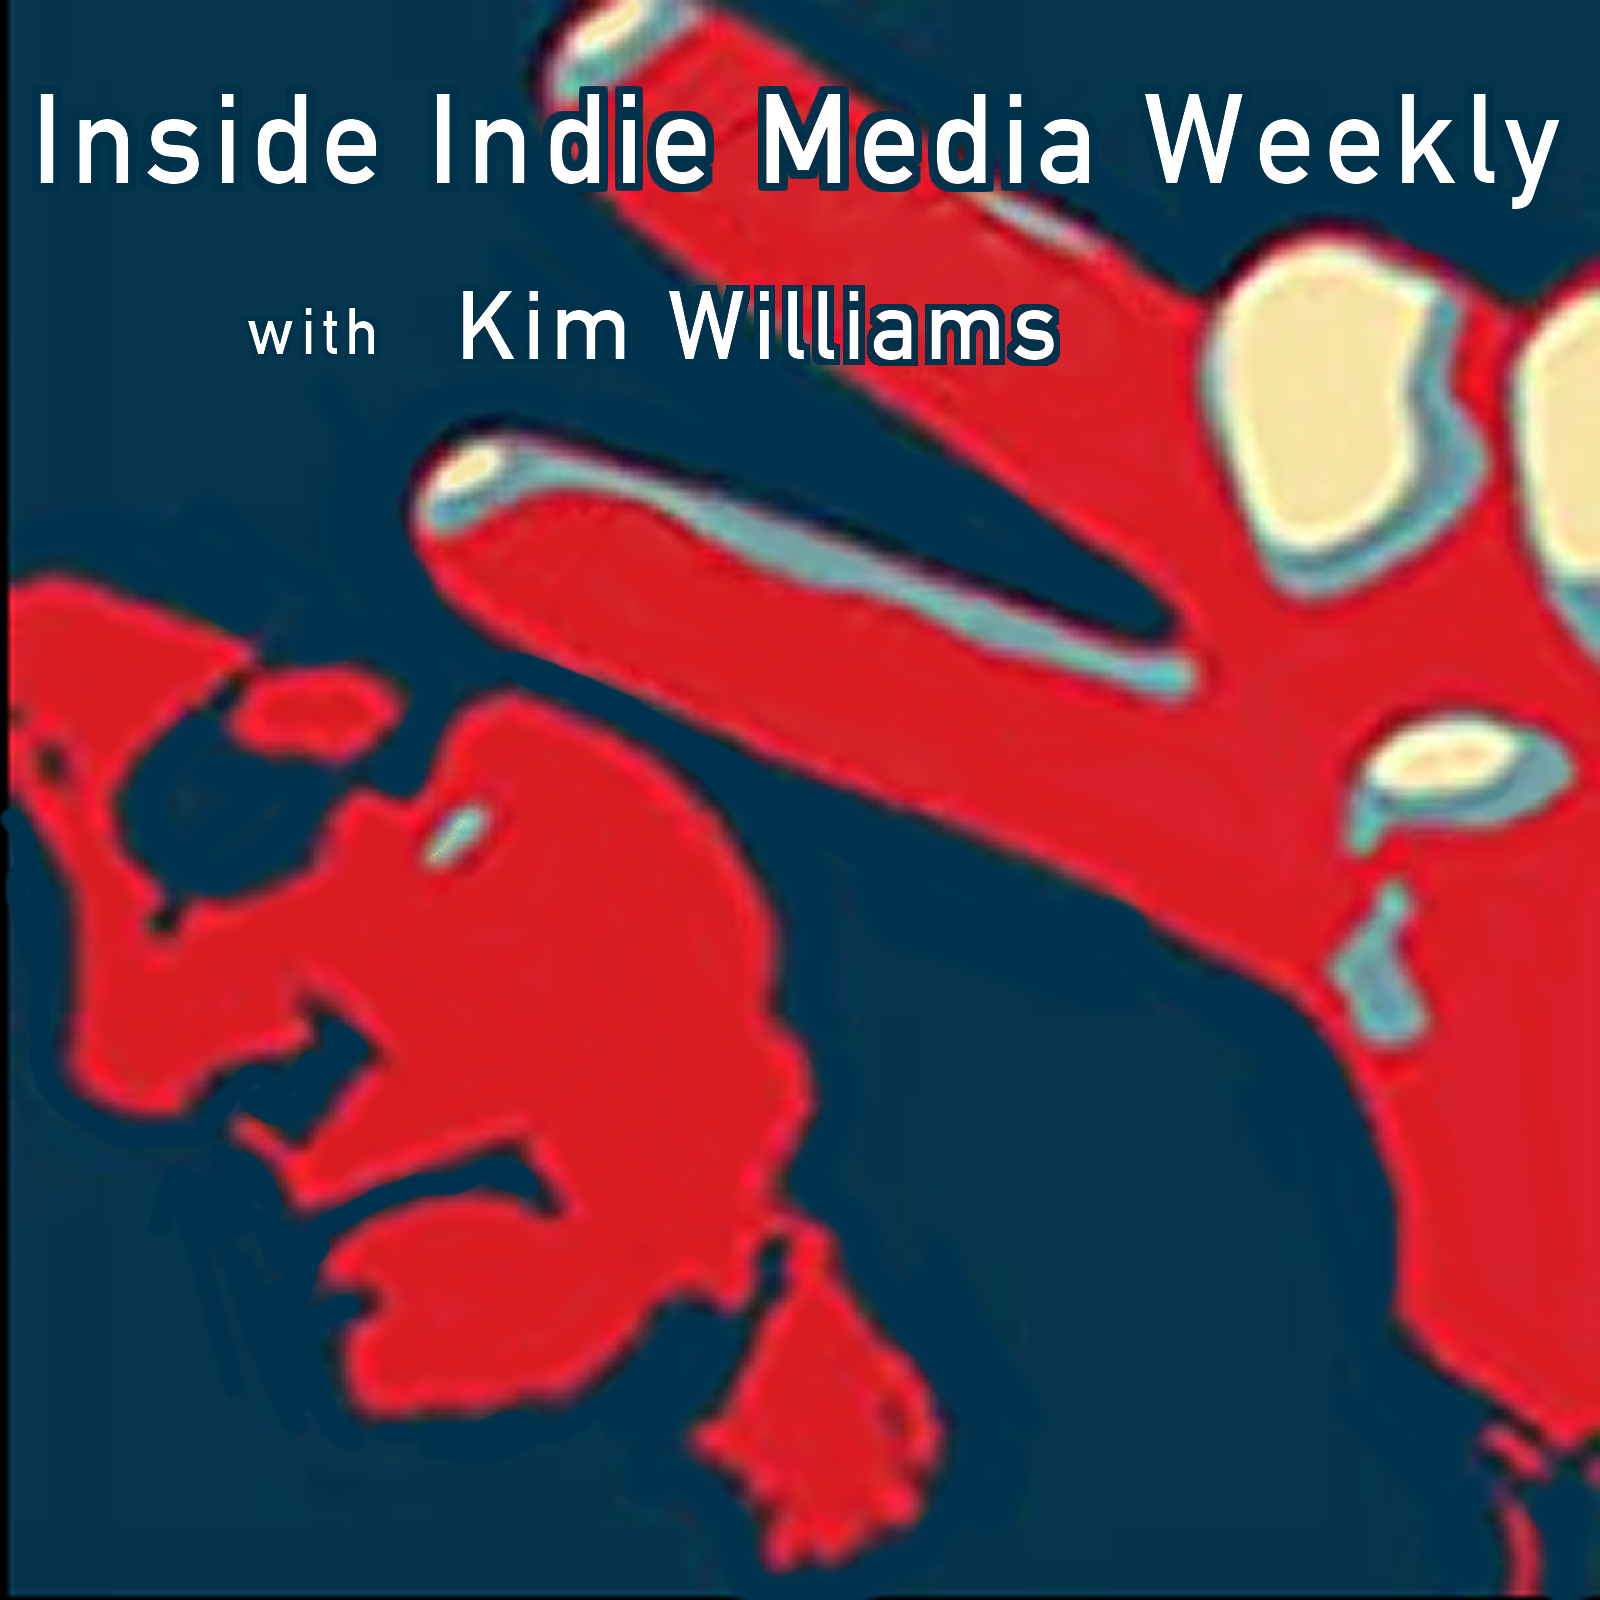 Inside Indie Media Weekly